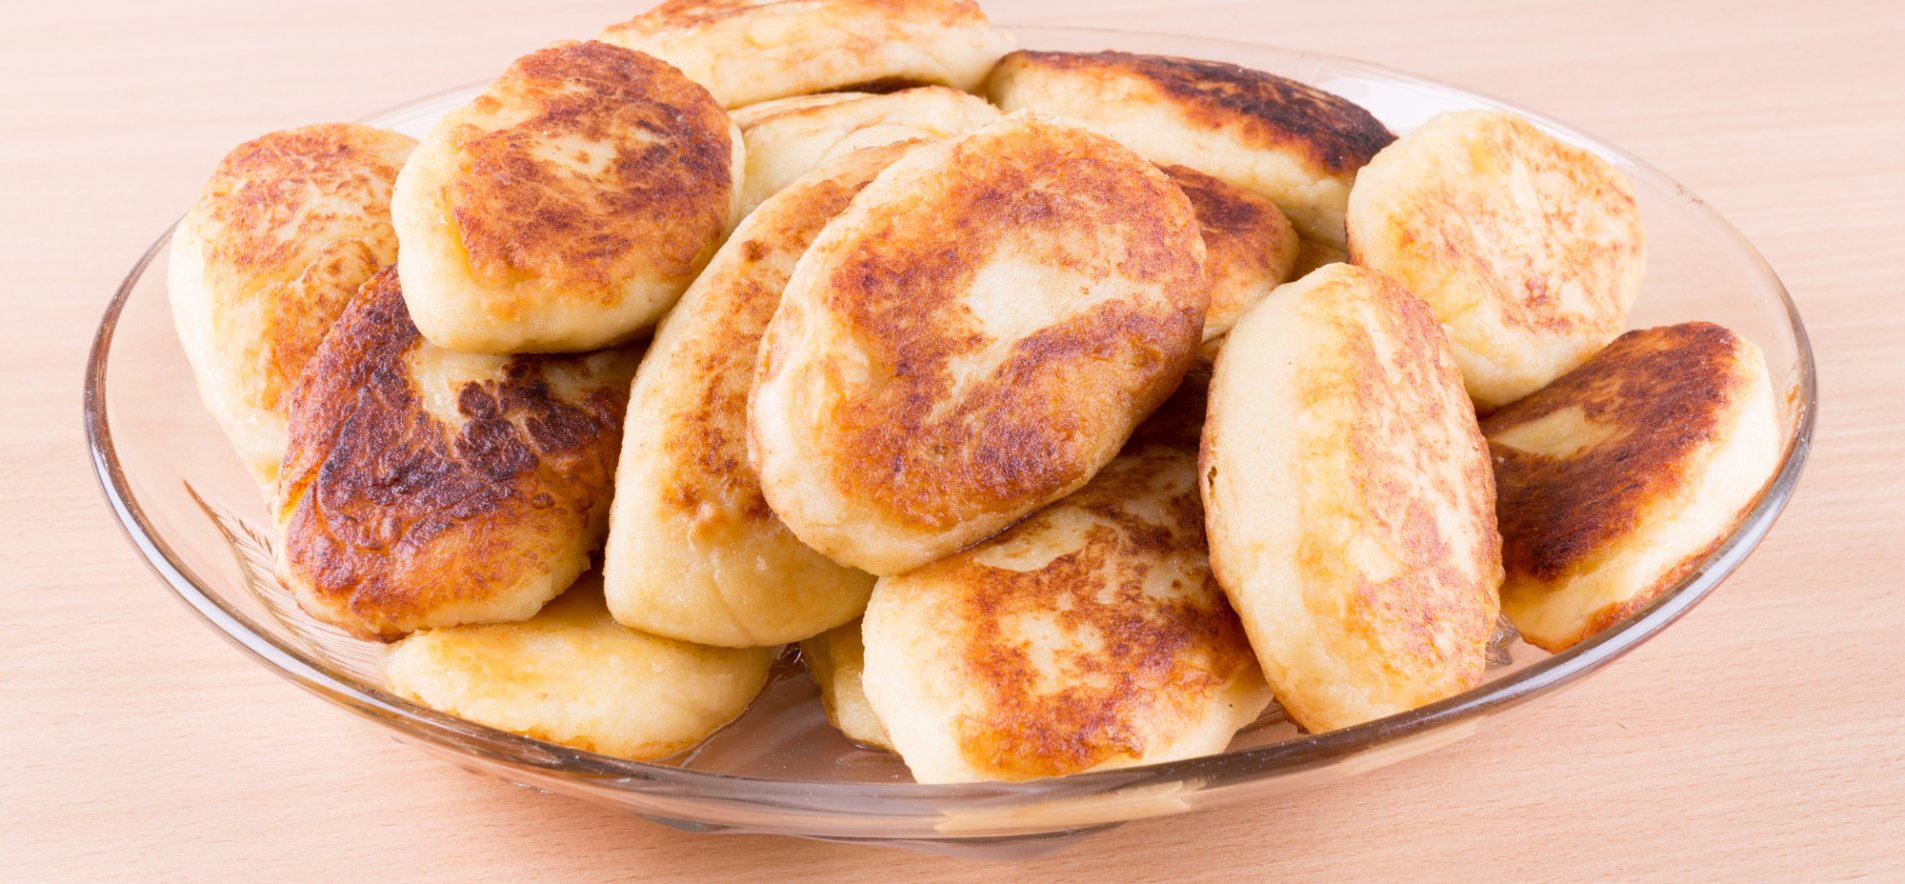 Жареные пирожки с вареньем - пошаговый рецепт с фото на конференц-зал-самара.рф